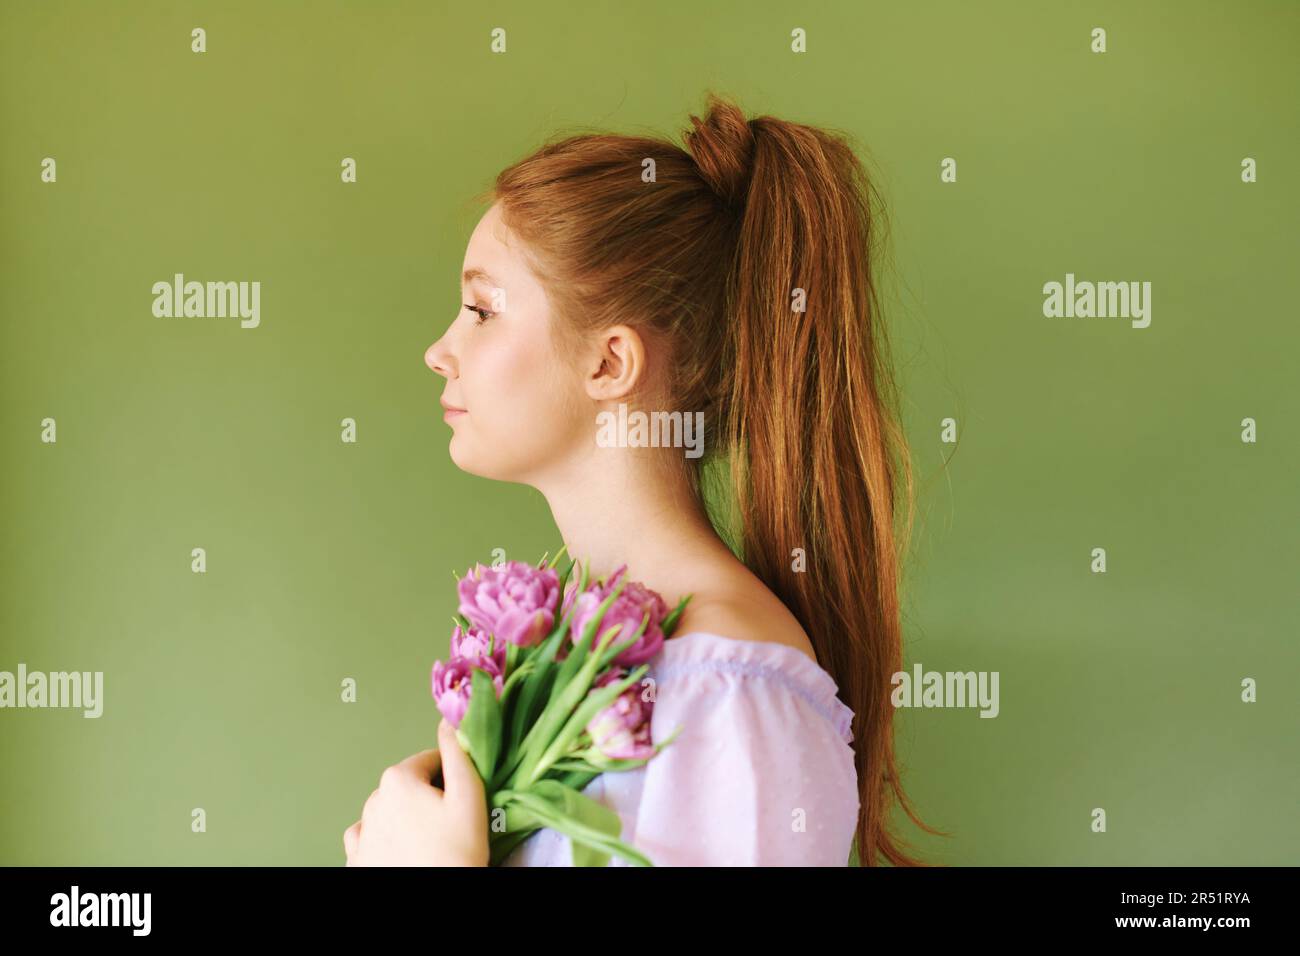 Portrait de beauté de la jolie jeune fille de 15 - 16 ans de téeenage à cheveux rouges vêtue de robe pourpre posant sur fond vert, tenant des fleurs de tulipe Banque D'Images